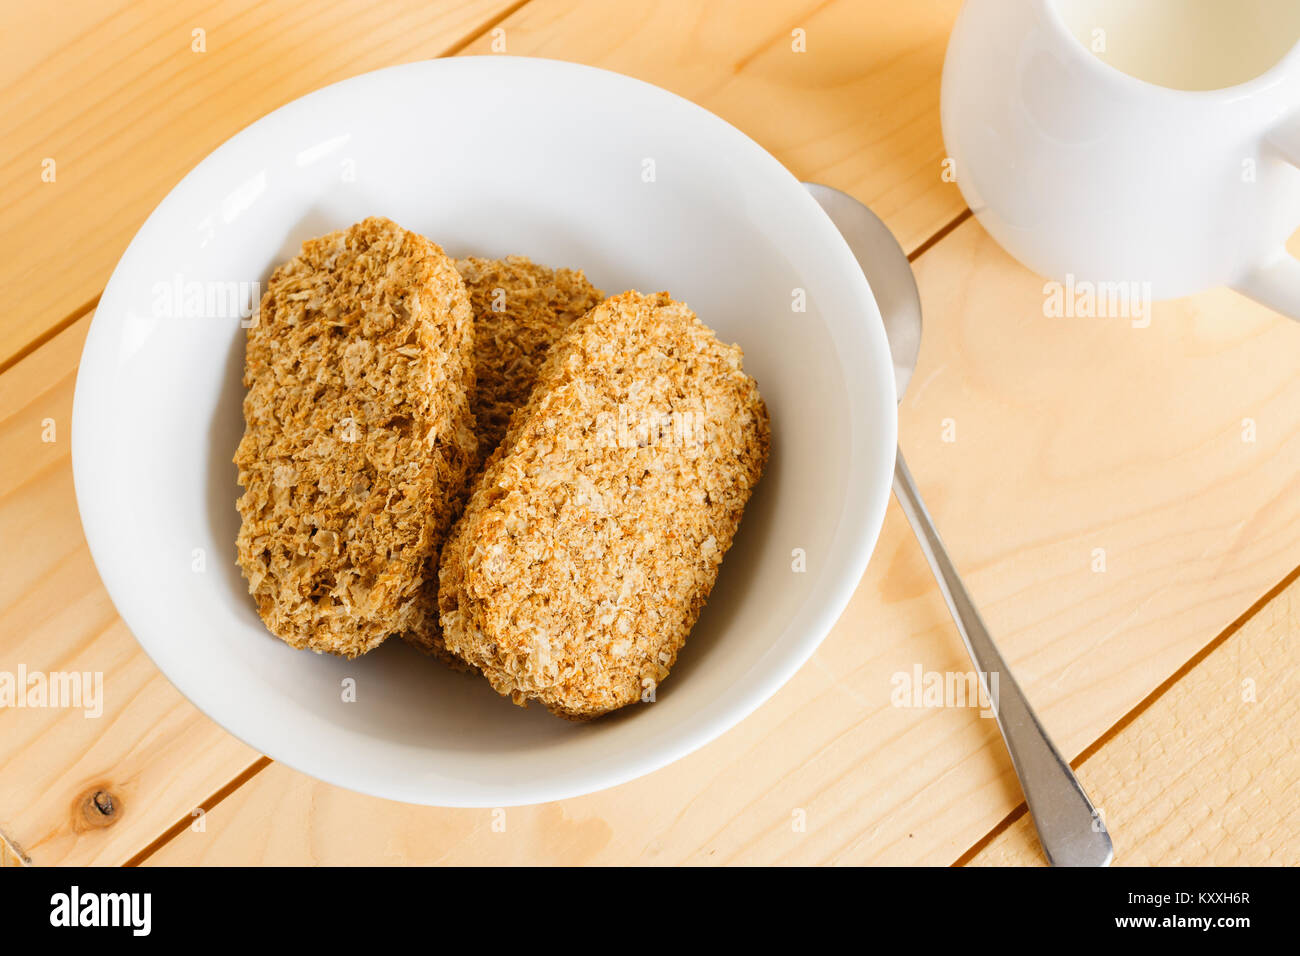 Biscuits de petit-déjeuner complet avec un pichet de lait Banque D'Images